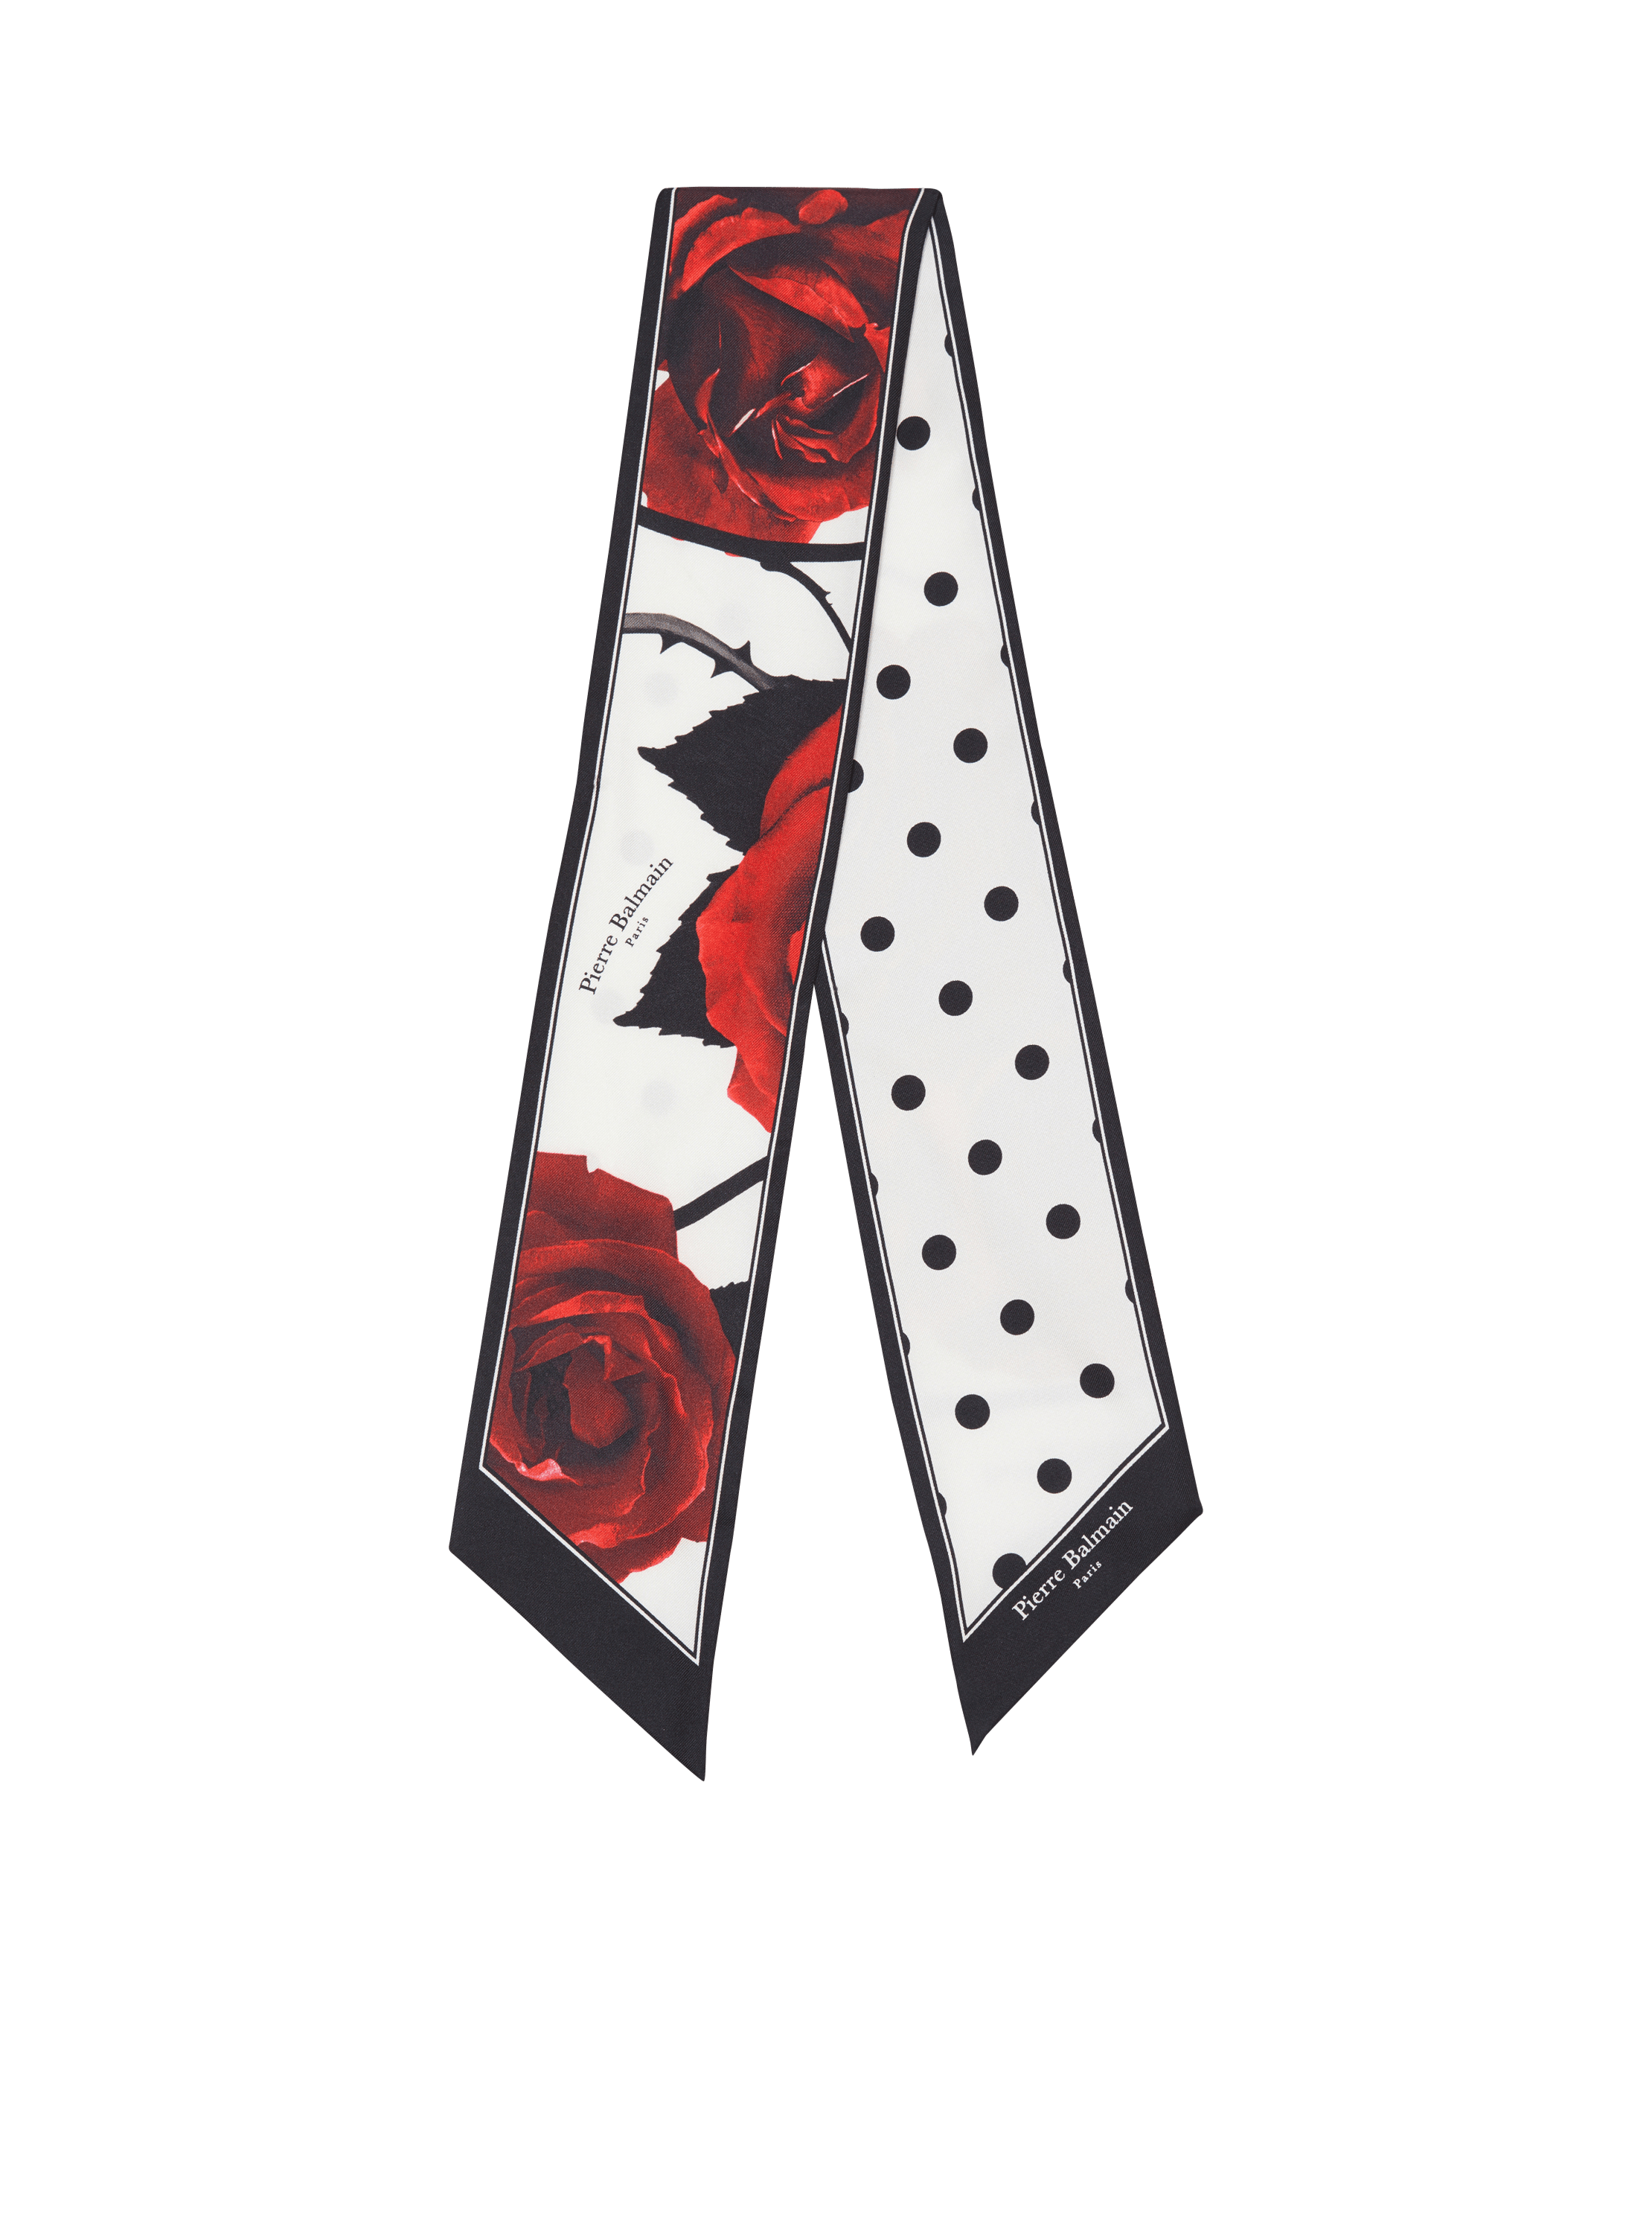 Red Roses and Polka Dots printed bandana